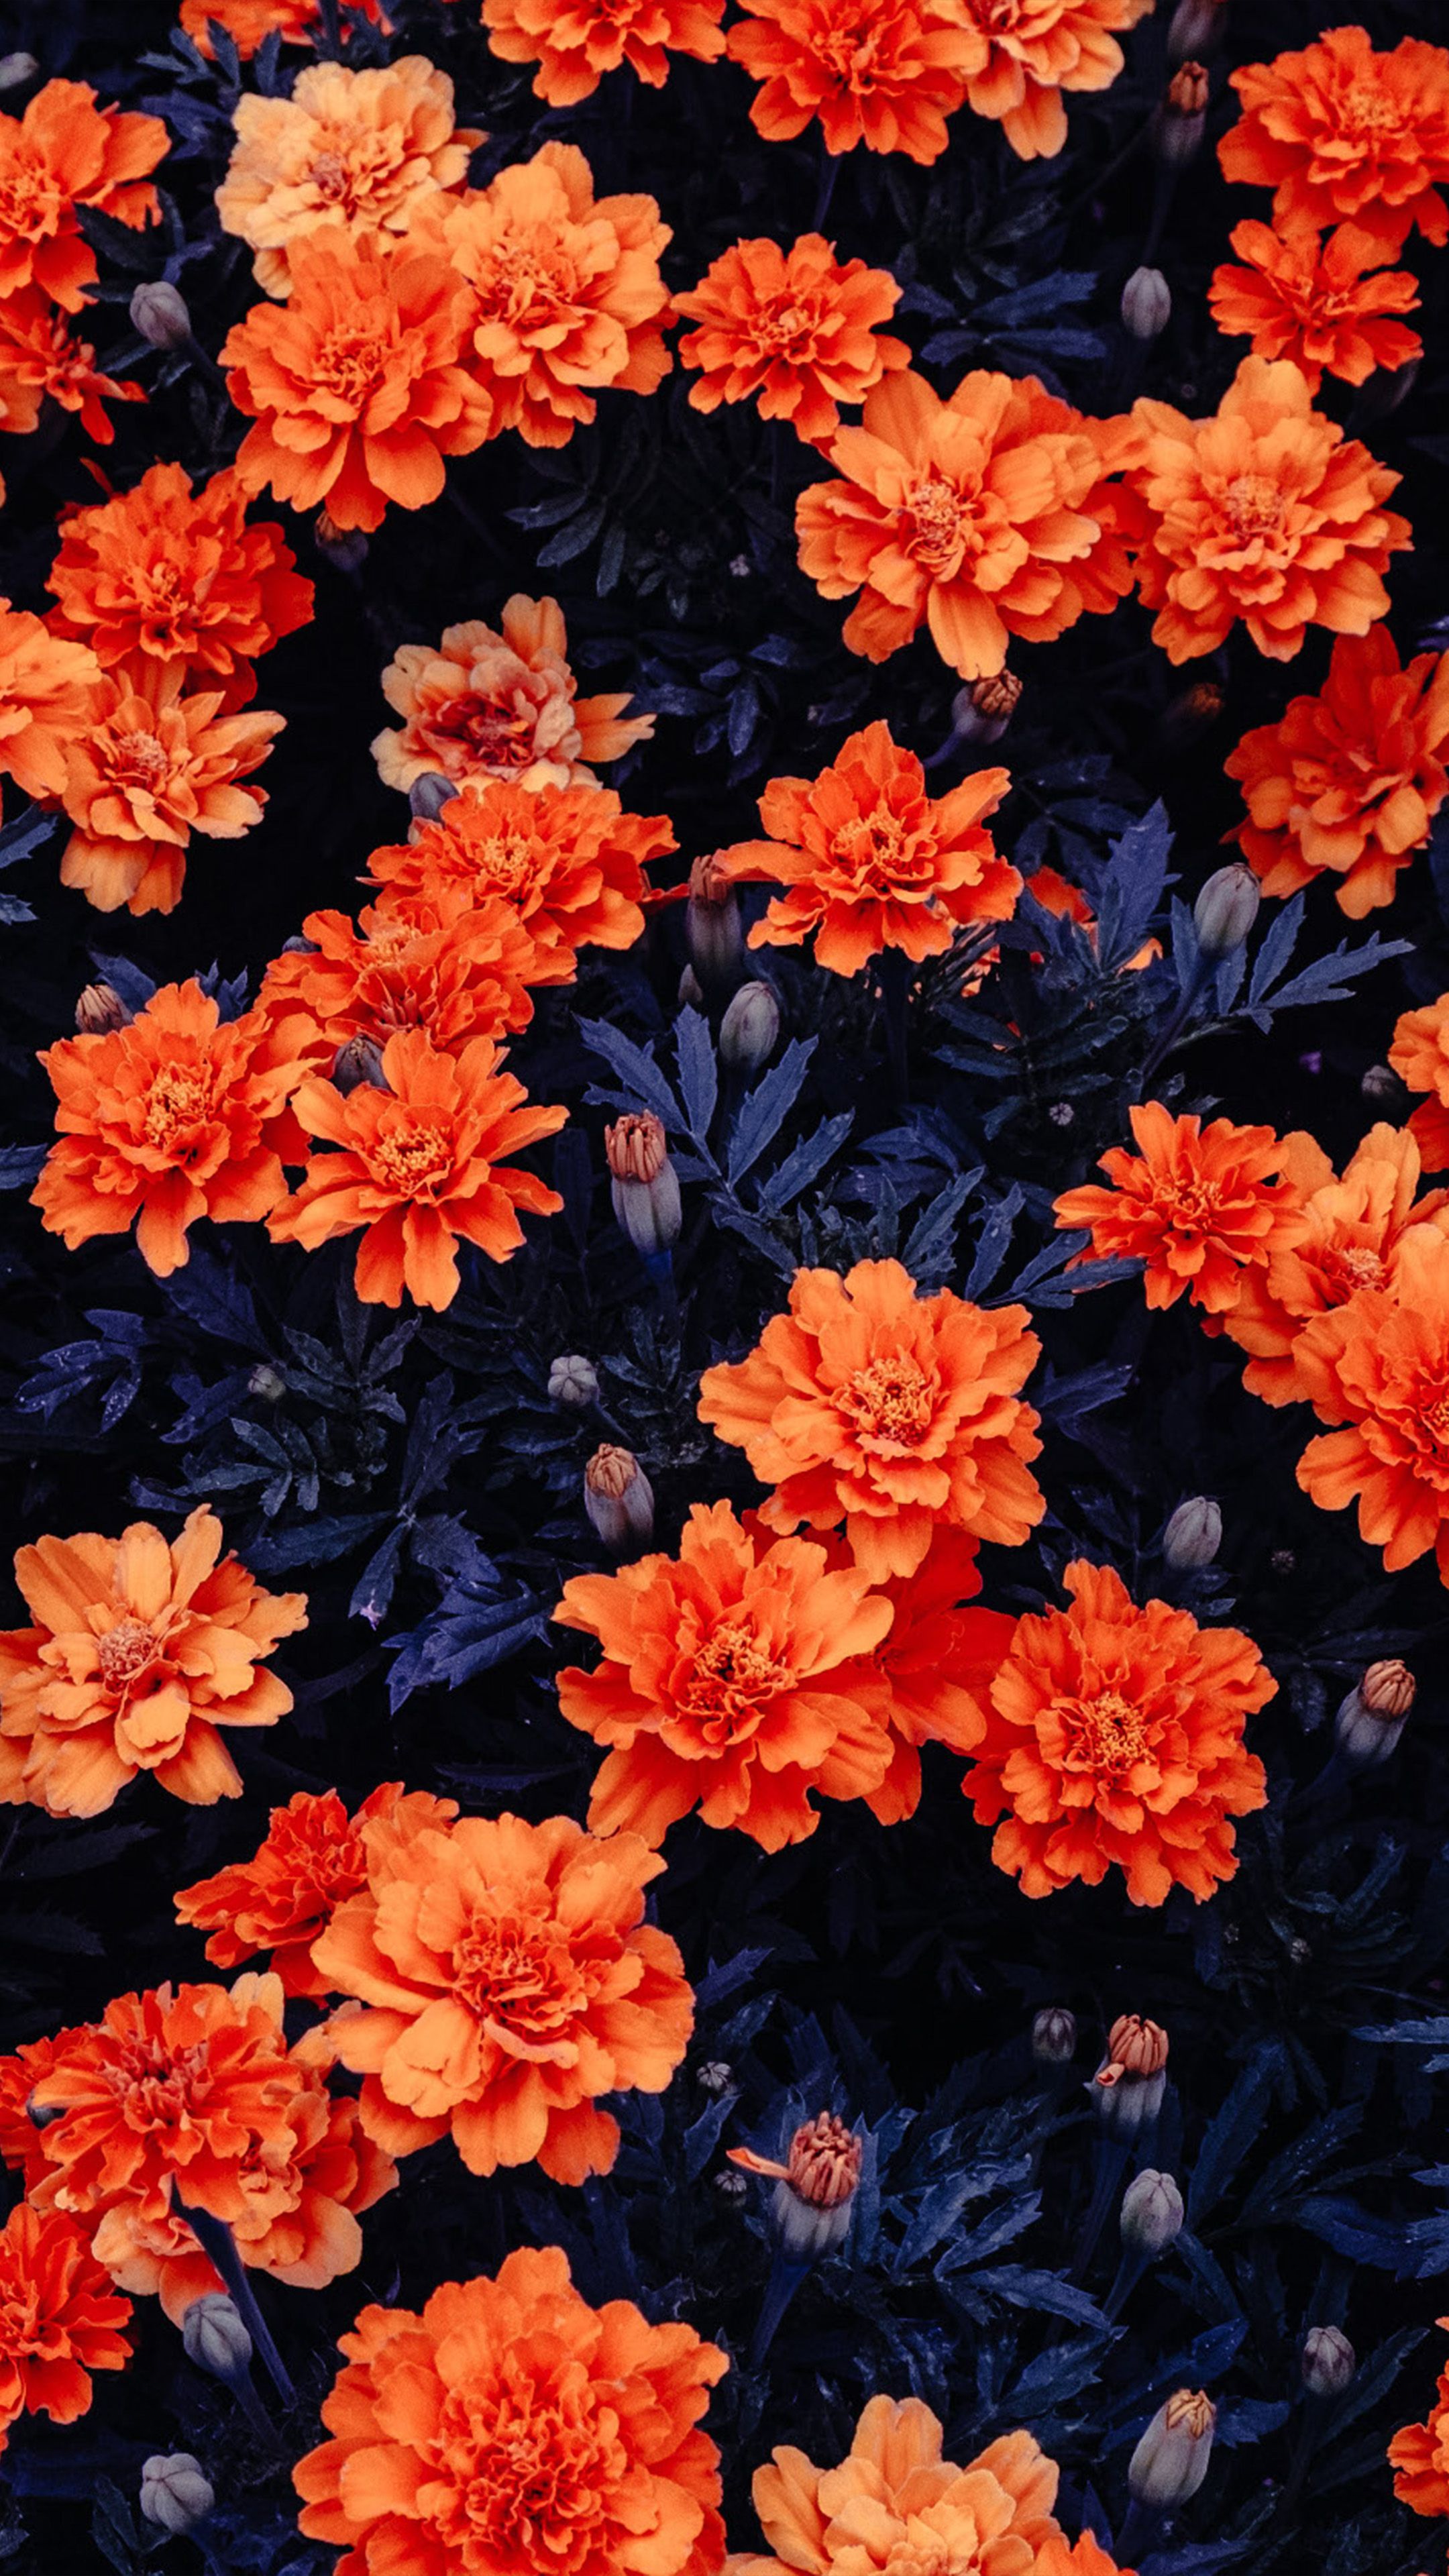 A field of orange flowers - Flower